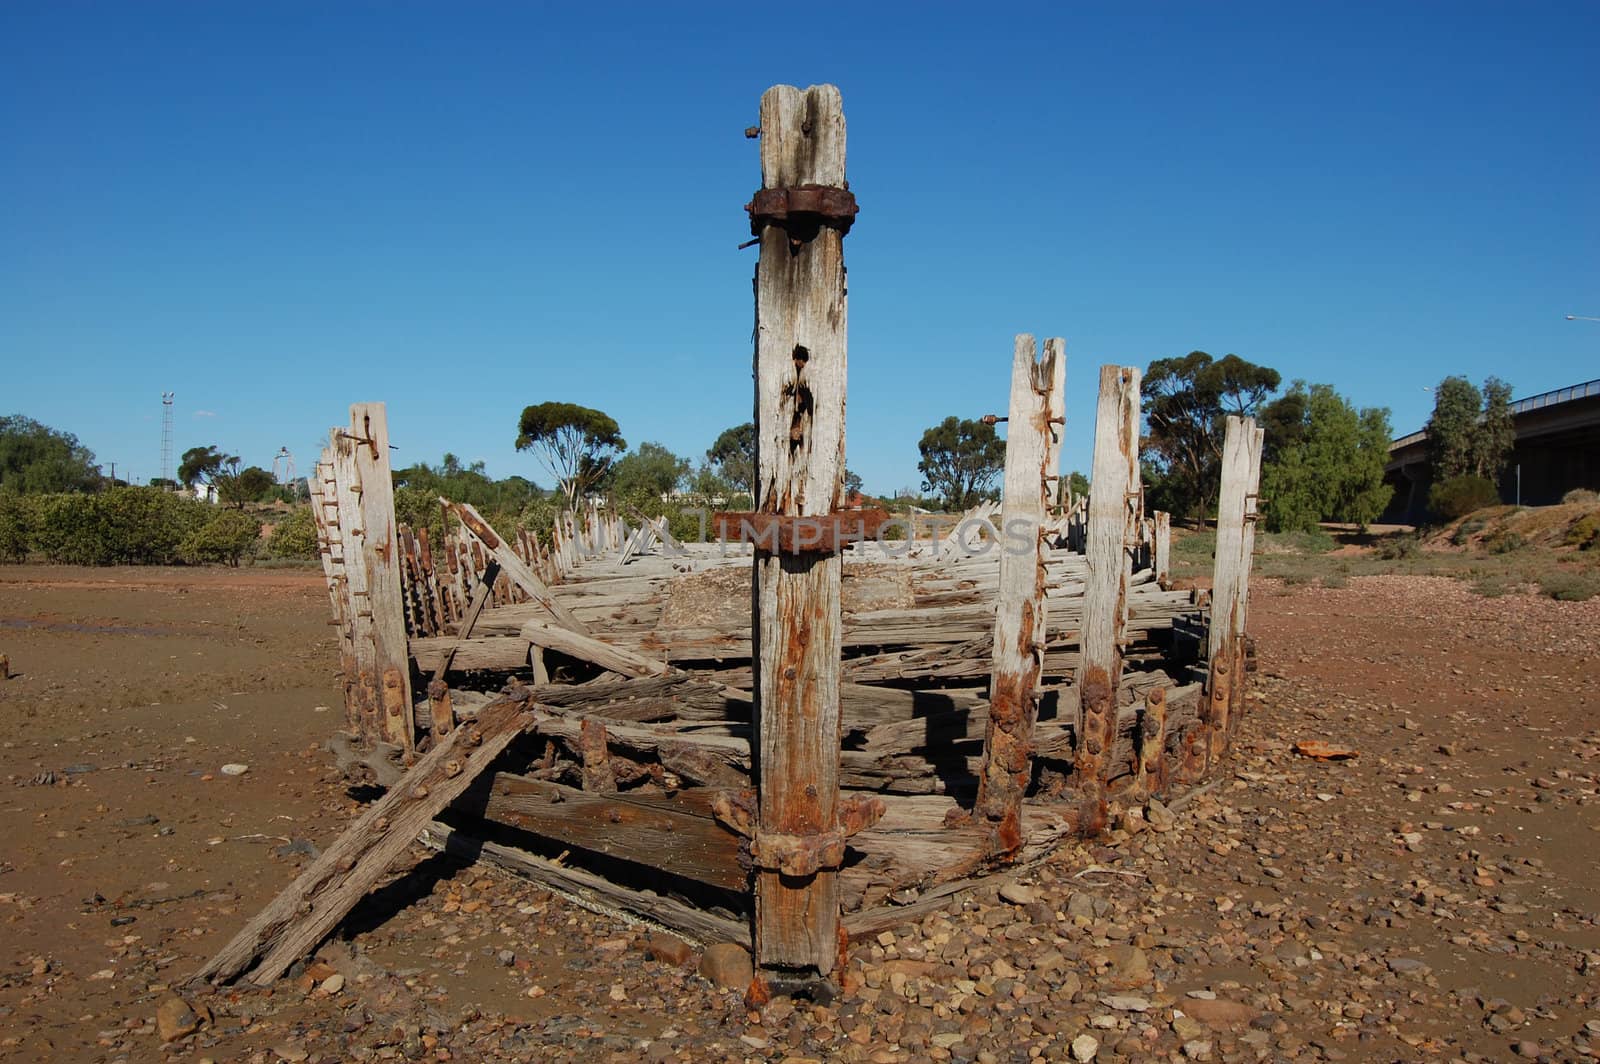 Abandoned barge in coastal area, South Australia